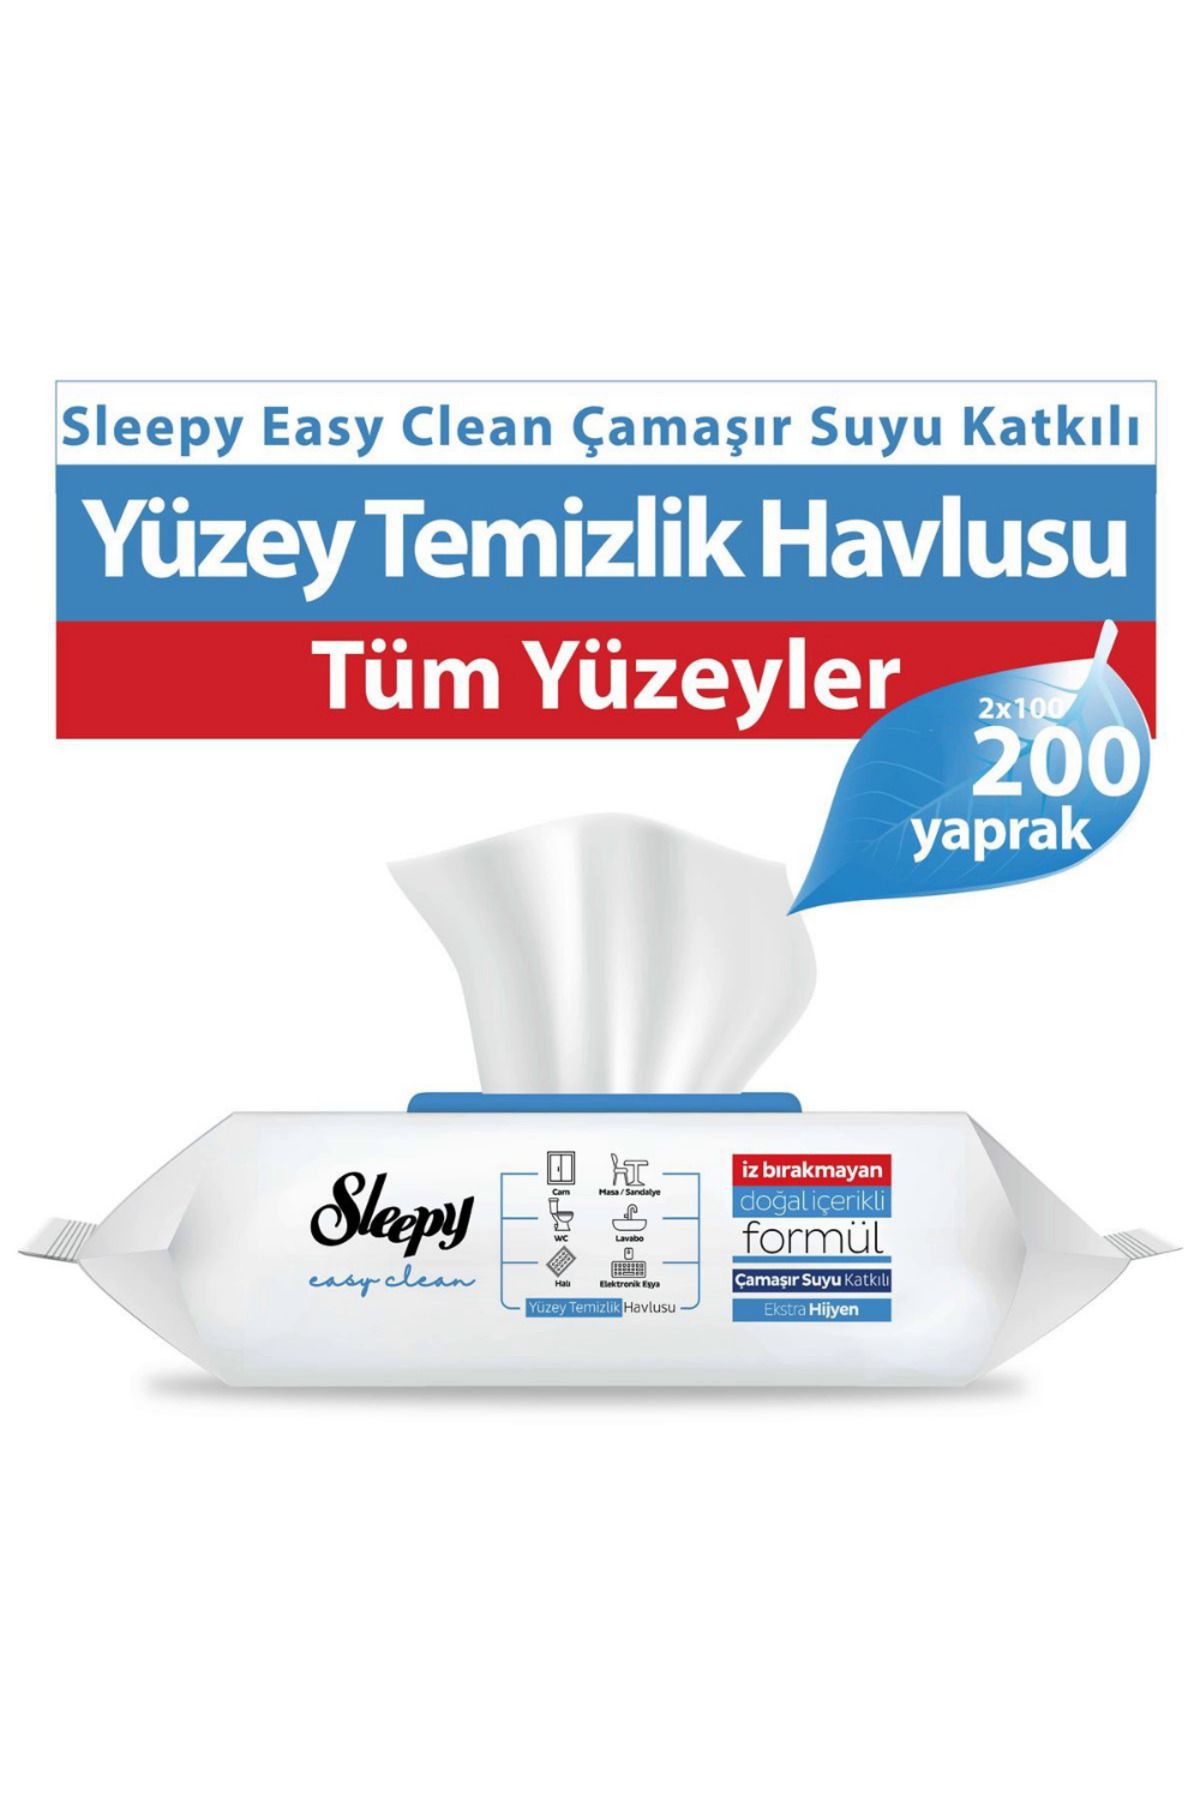 Sleepy Easy Clean Çamaşır Suyu Katkılı Yüzey Temizlik Havlusu 100 Yaprak 2 ADET